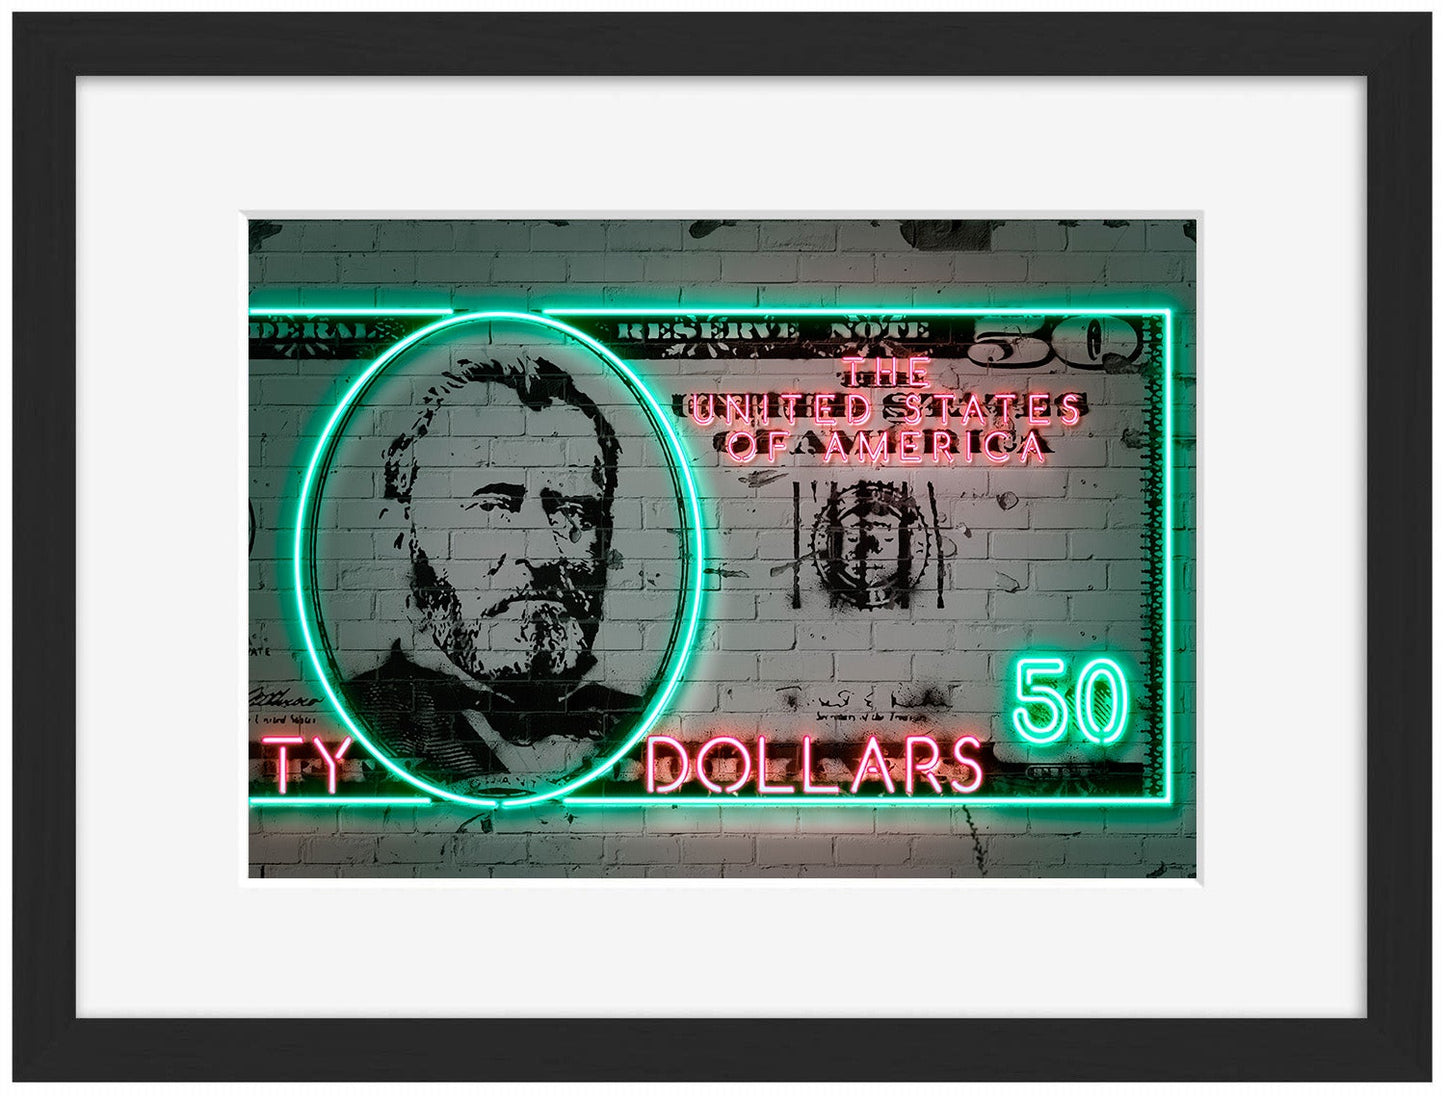 50 Dollars-neon-art, print-Framed Print-30 x 40 cm-BLUE SHAKER